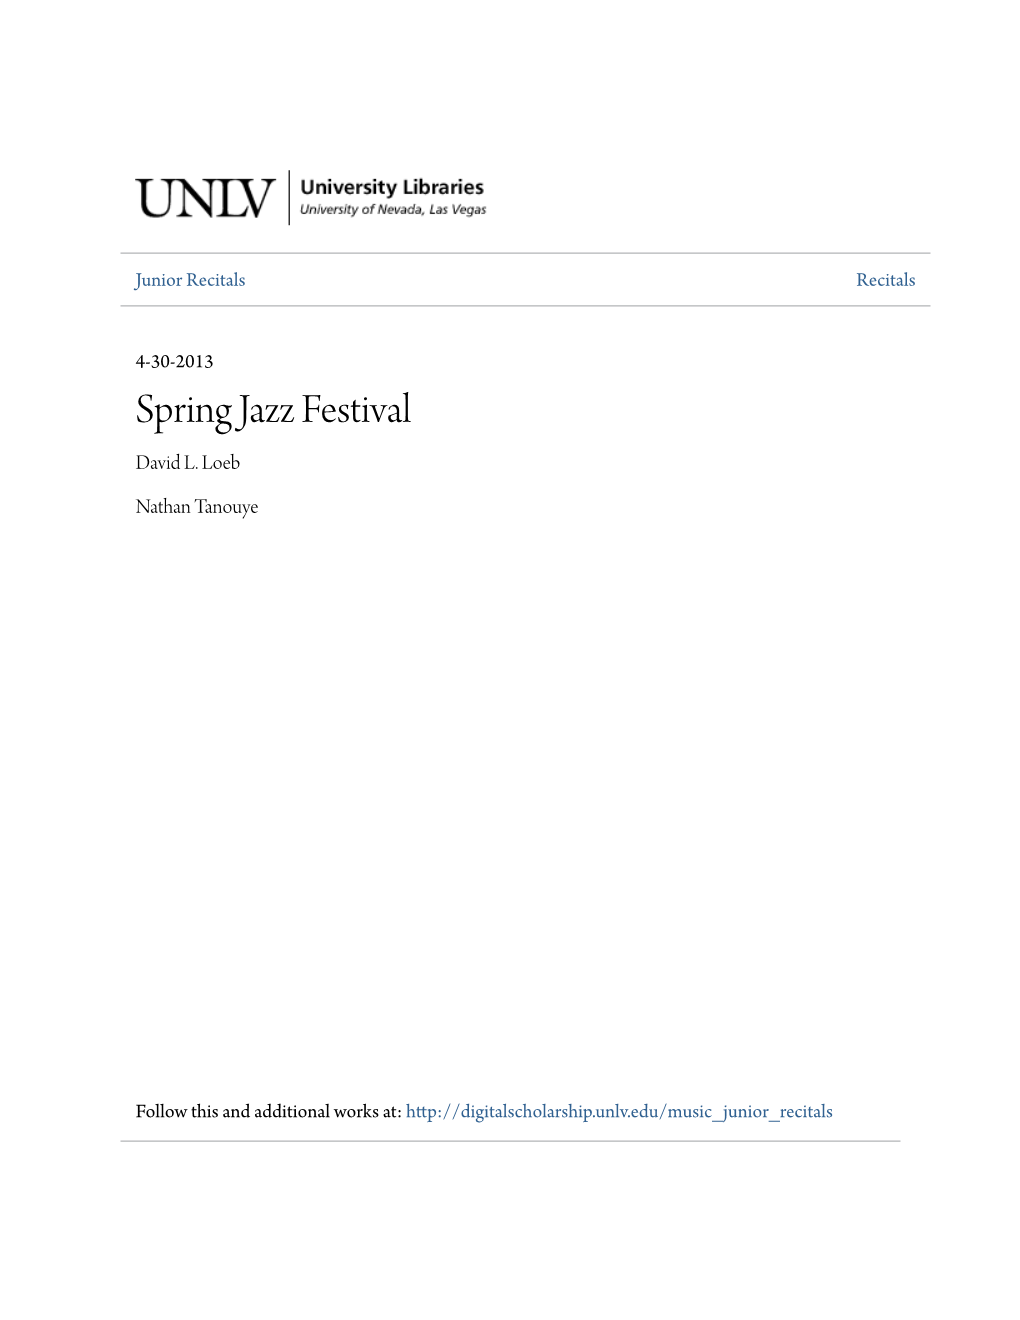 Spring Jazz Festival David L